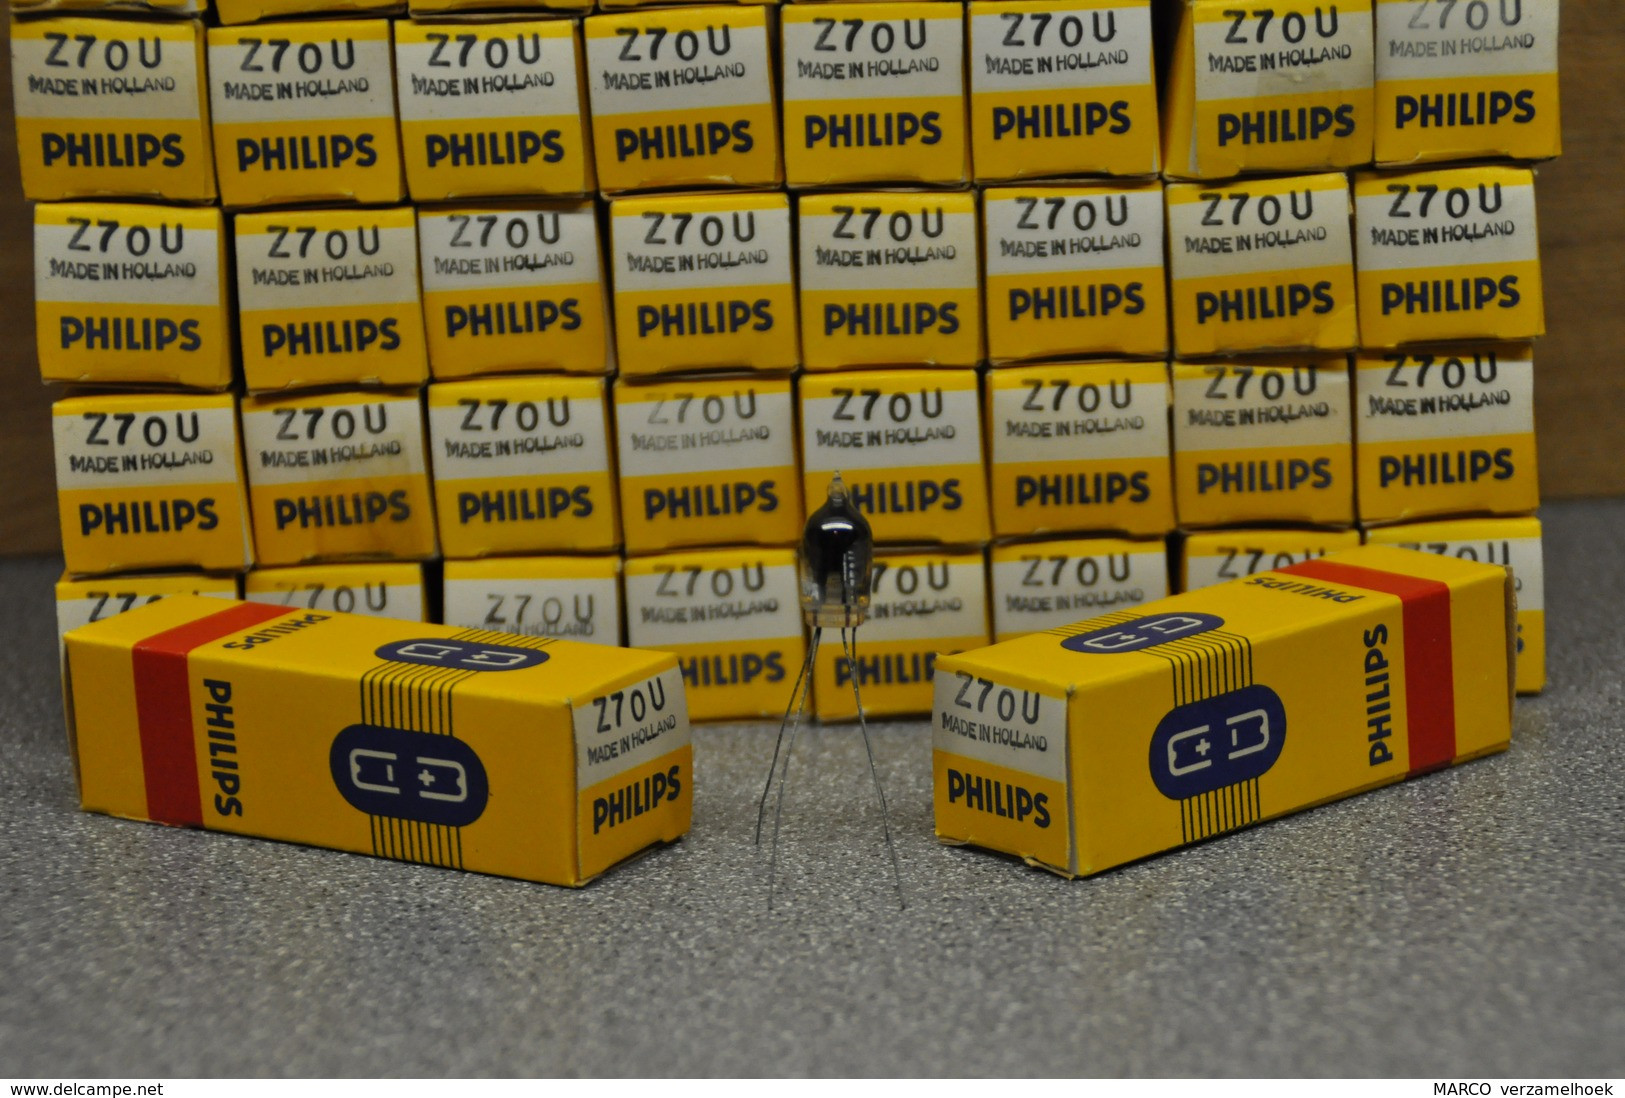 Philips Buis-röhre-tube Z70U - 7710 - GR43 Thyratron Tube New (jukebox) Neonbuisje Glimmröhre - Vacuum Tubes